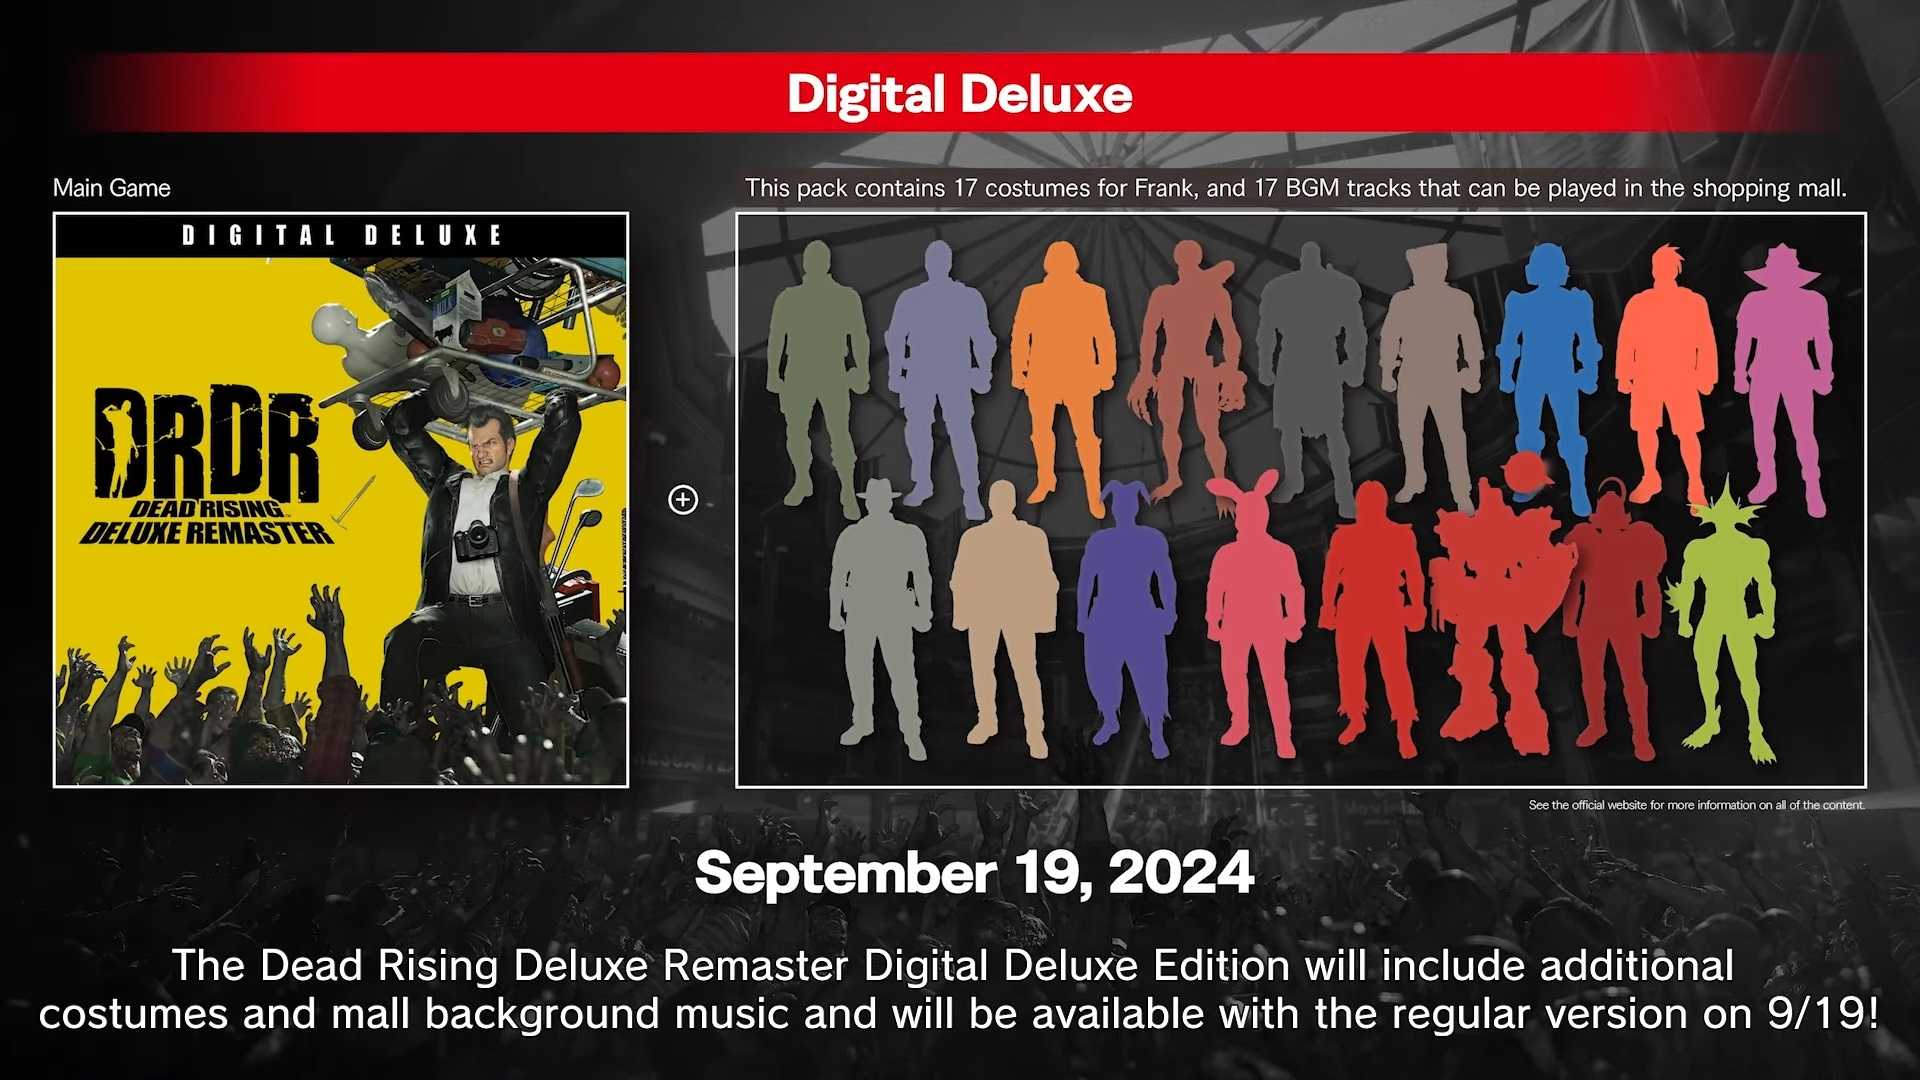 Dead Rising Deluxe Remaster digital deluxe